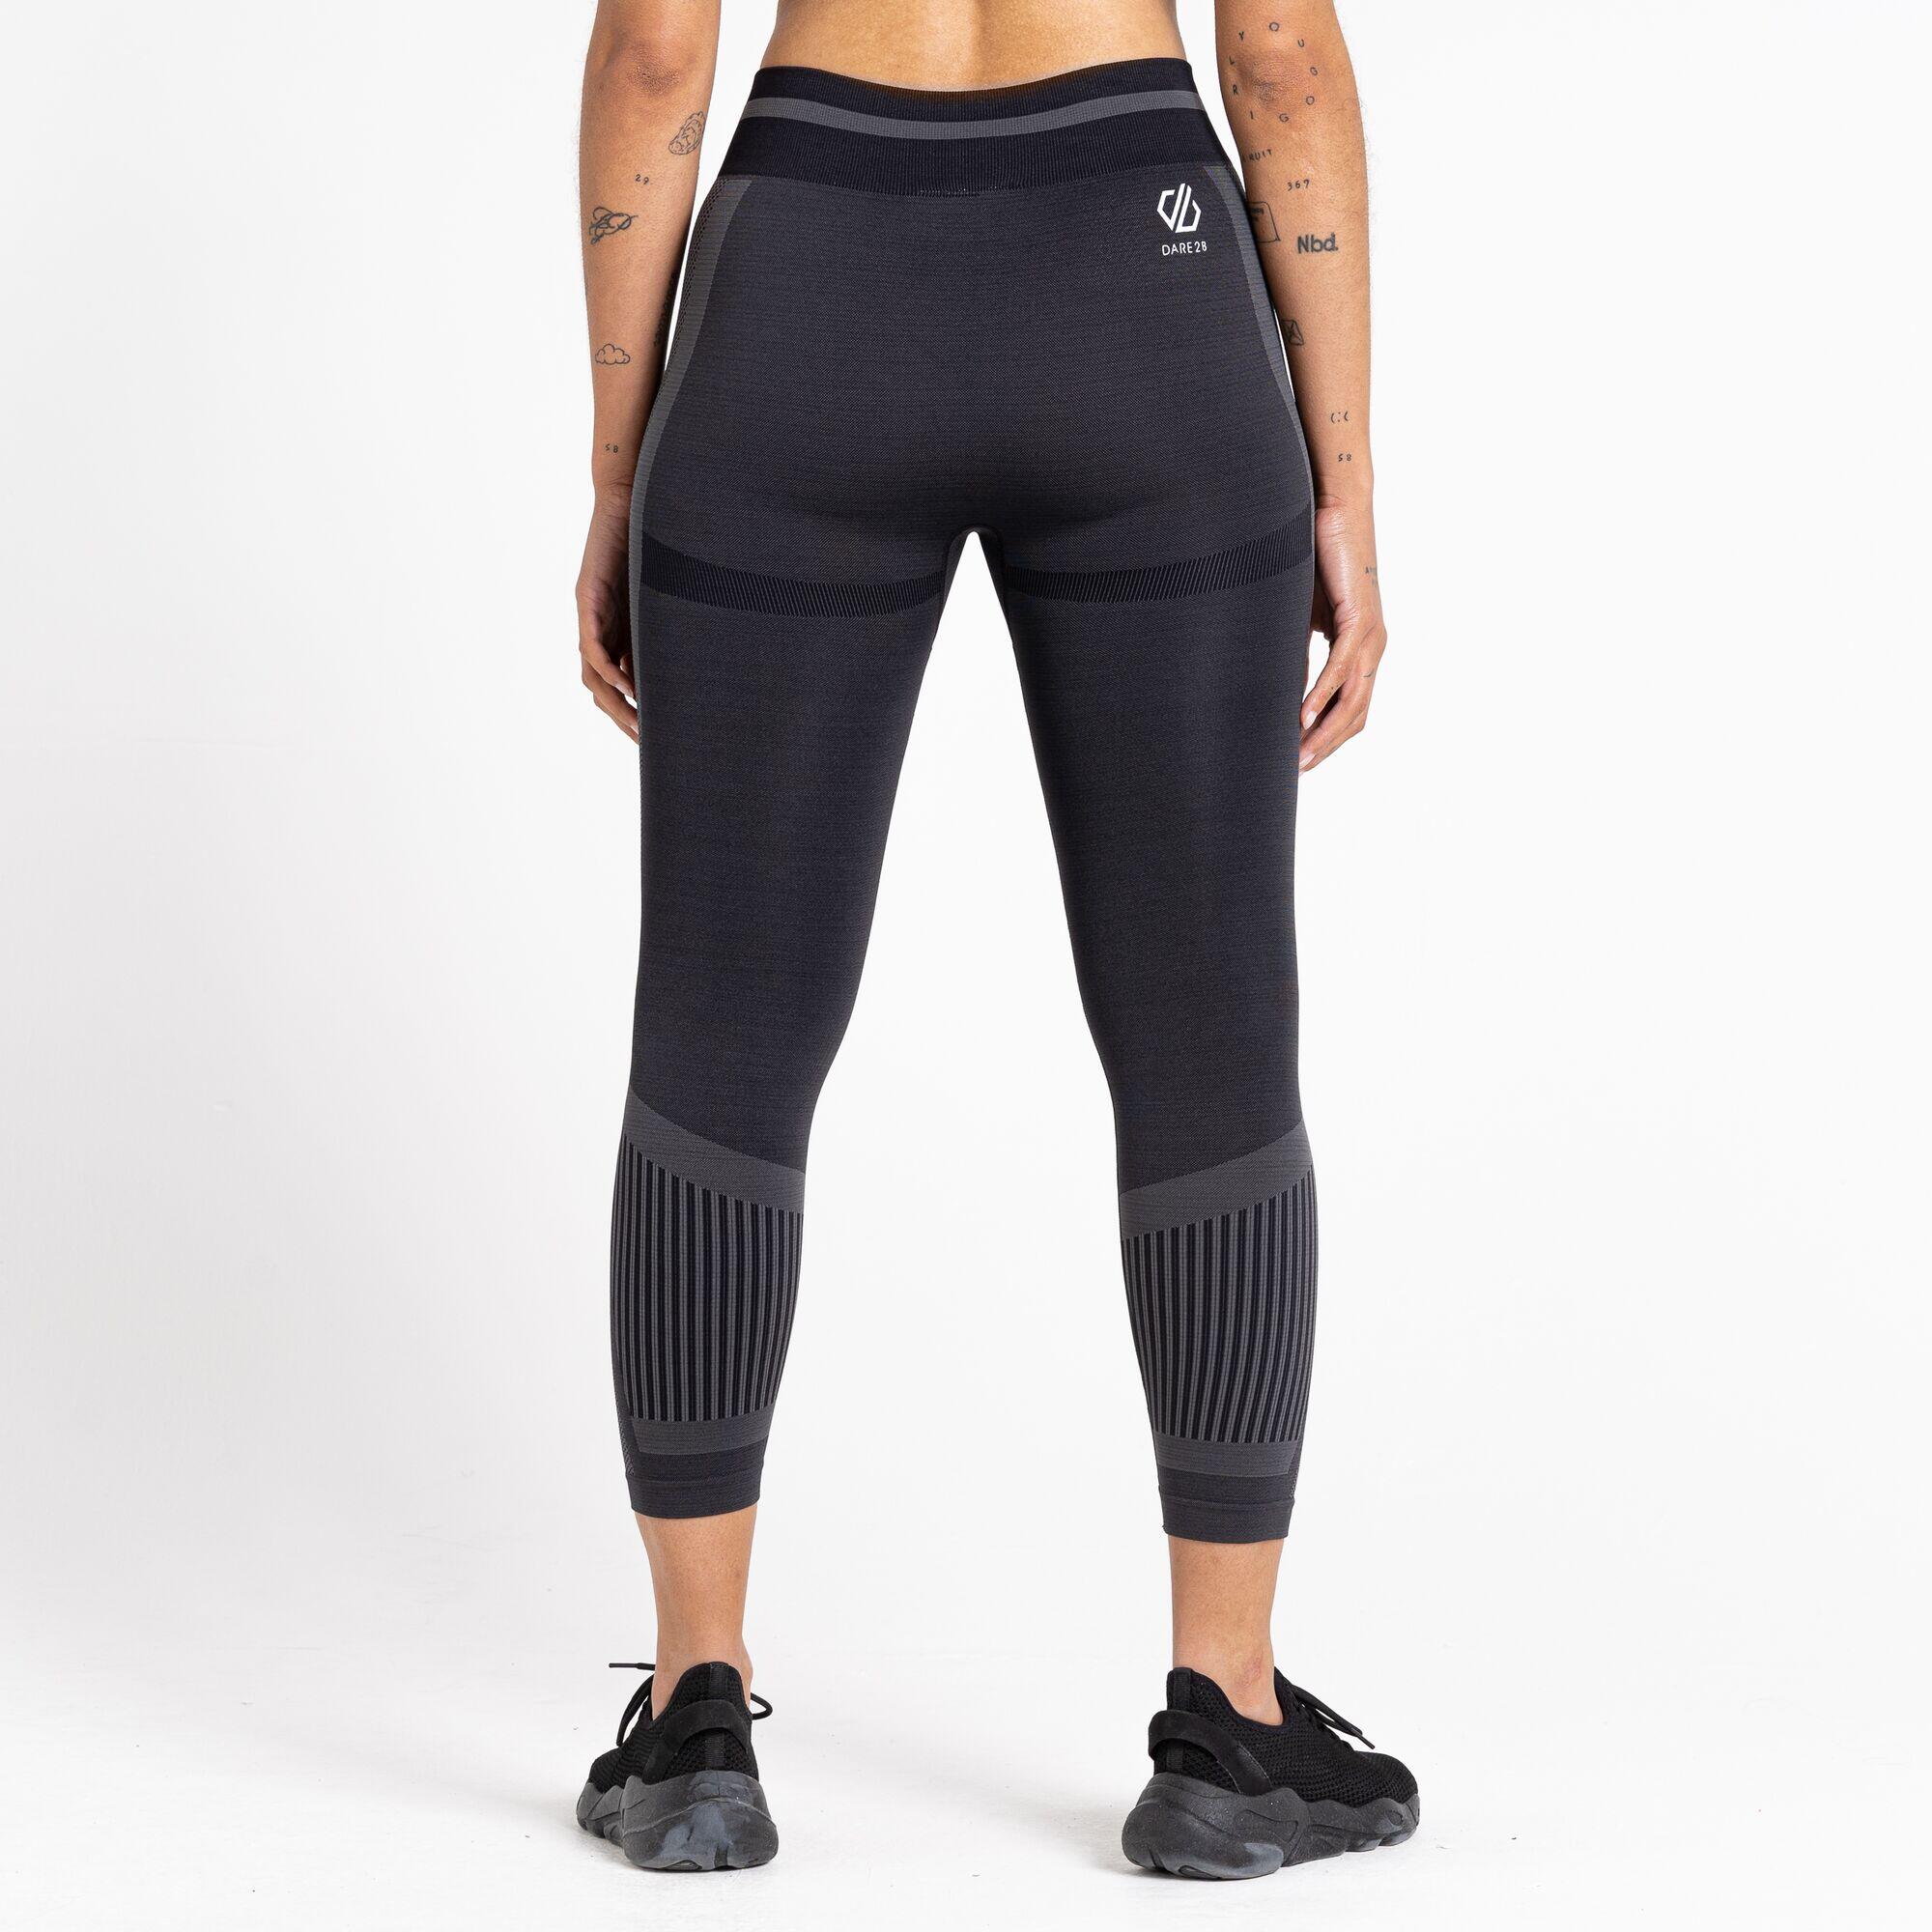 Dont Sweat It Women's Fitness Leggings - Black 4/5